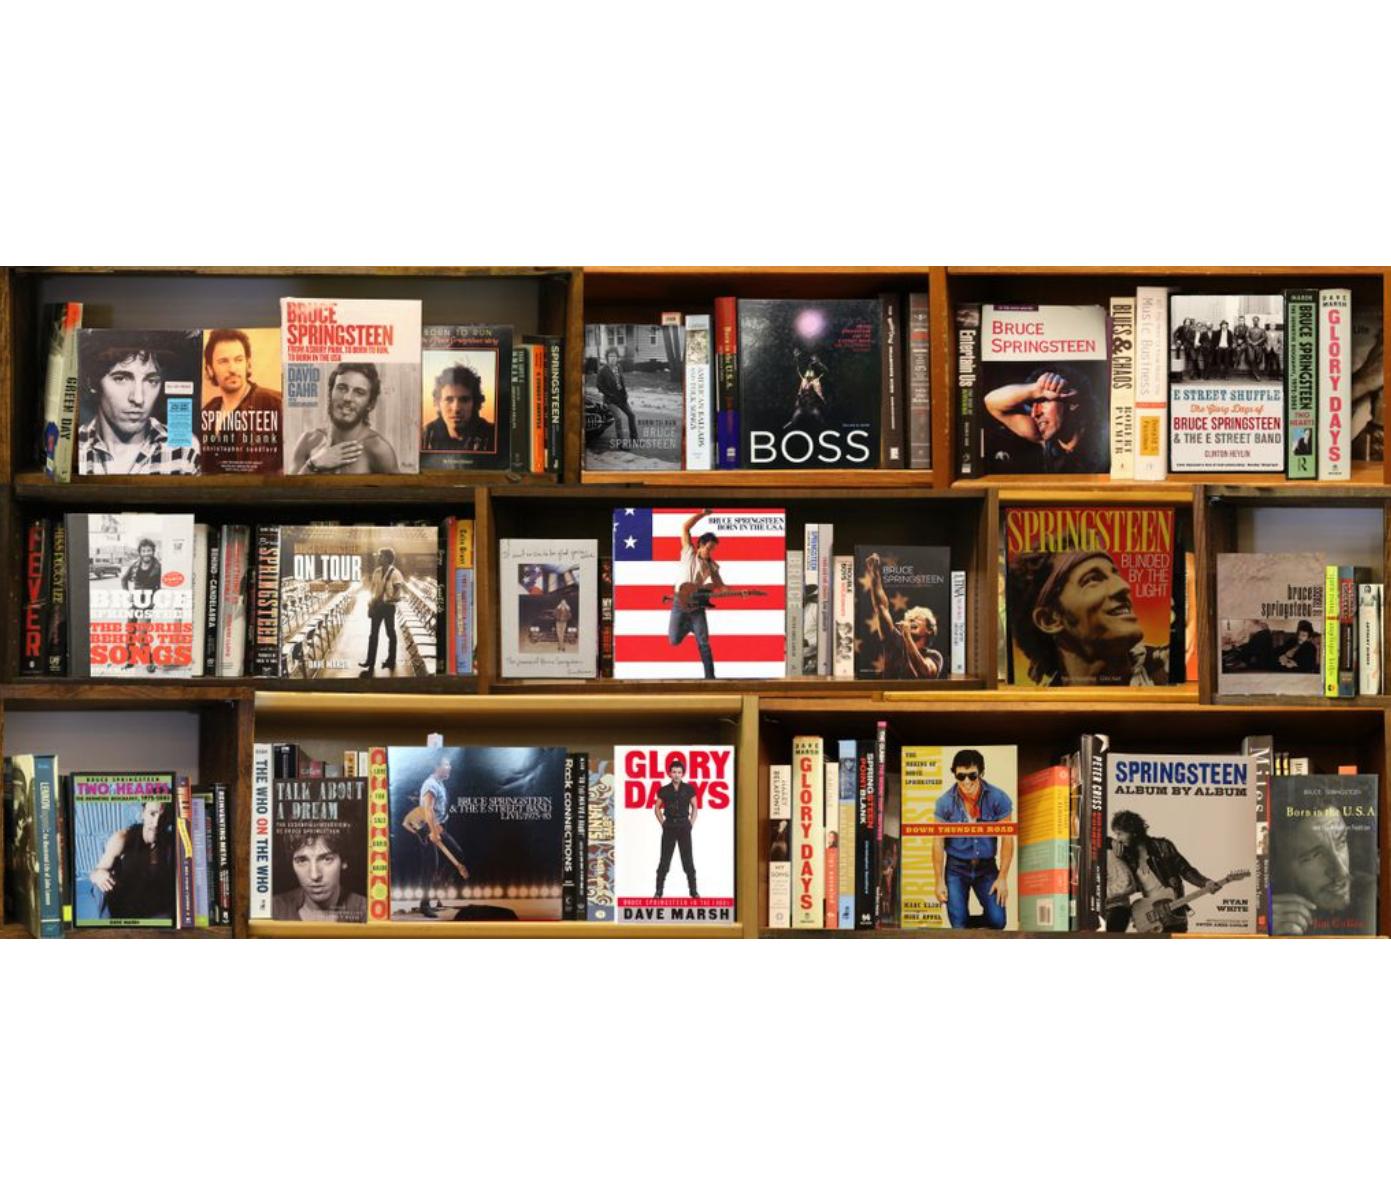 Boss (Bruce Springsteen) 3/5 BookScape von Max Steven Grossman 

Individuell fotografierte Bücher und Bücherregale. Mit Büchern und Alben von Bruce Springsteen. 

In seiner Fotoserie "Bookscapes" existieren die versammelten Bibliotheken nur in